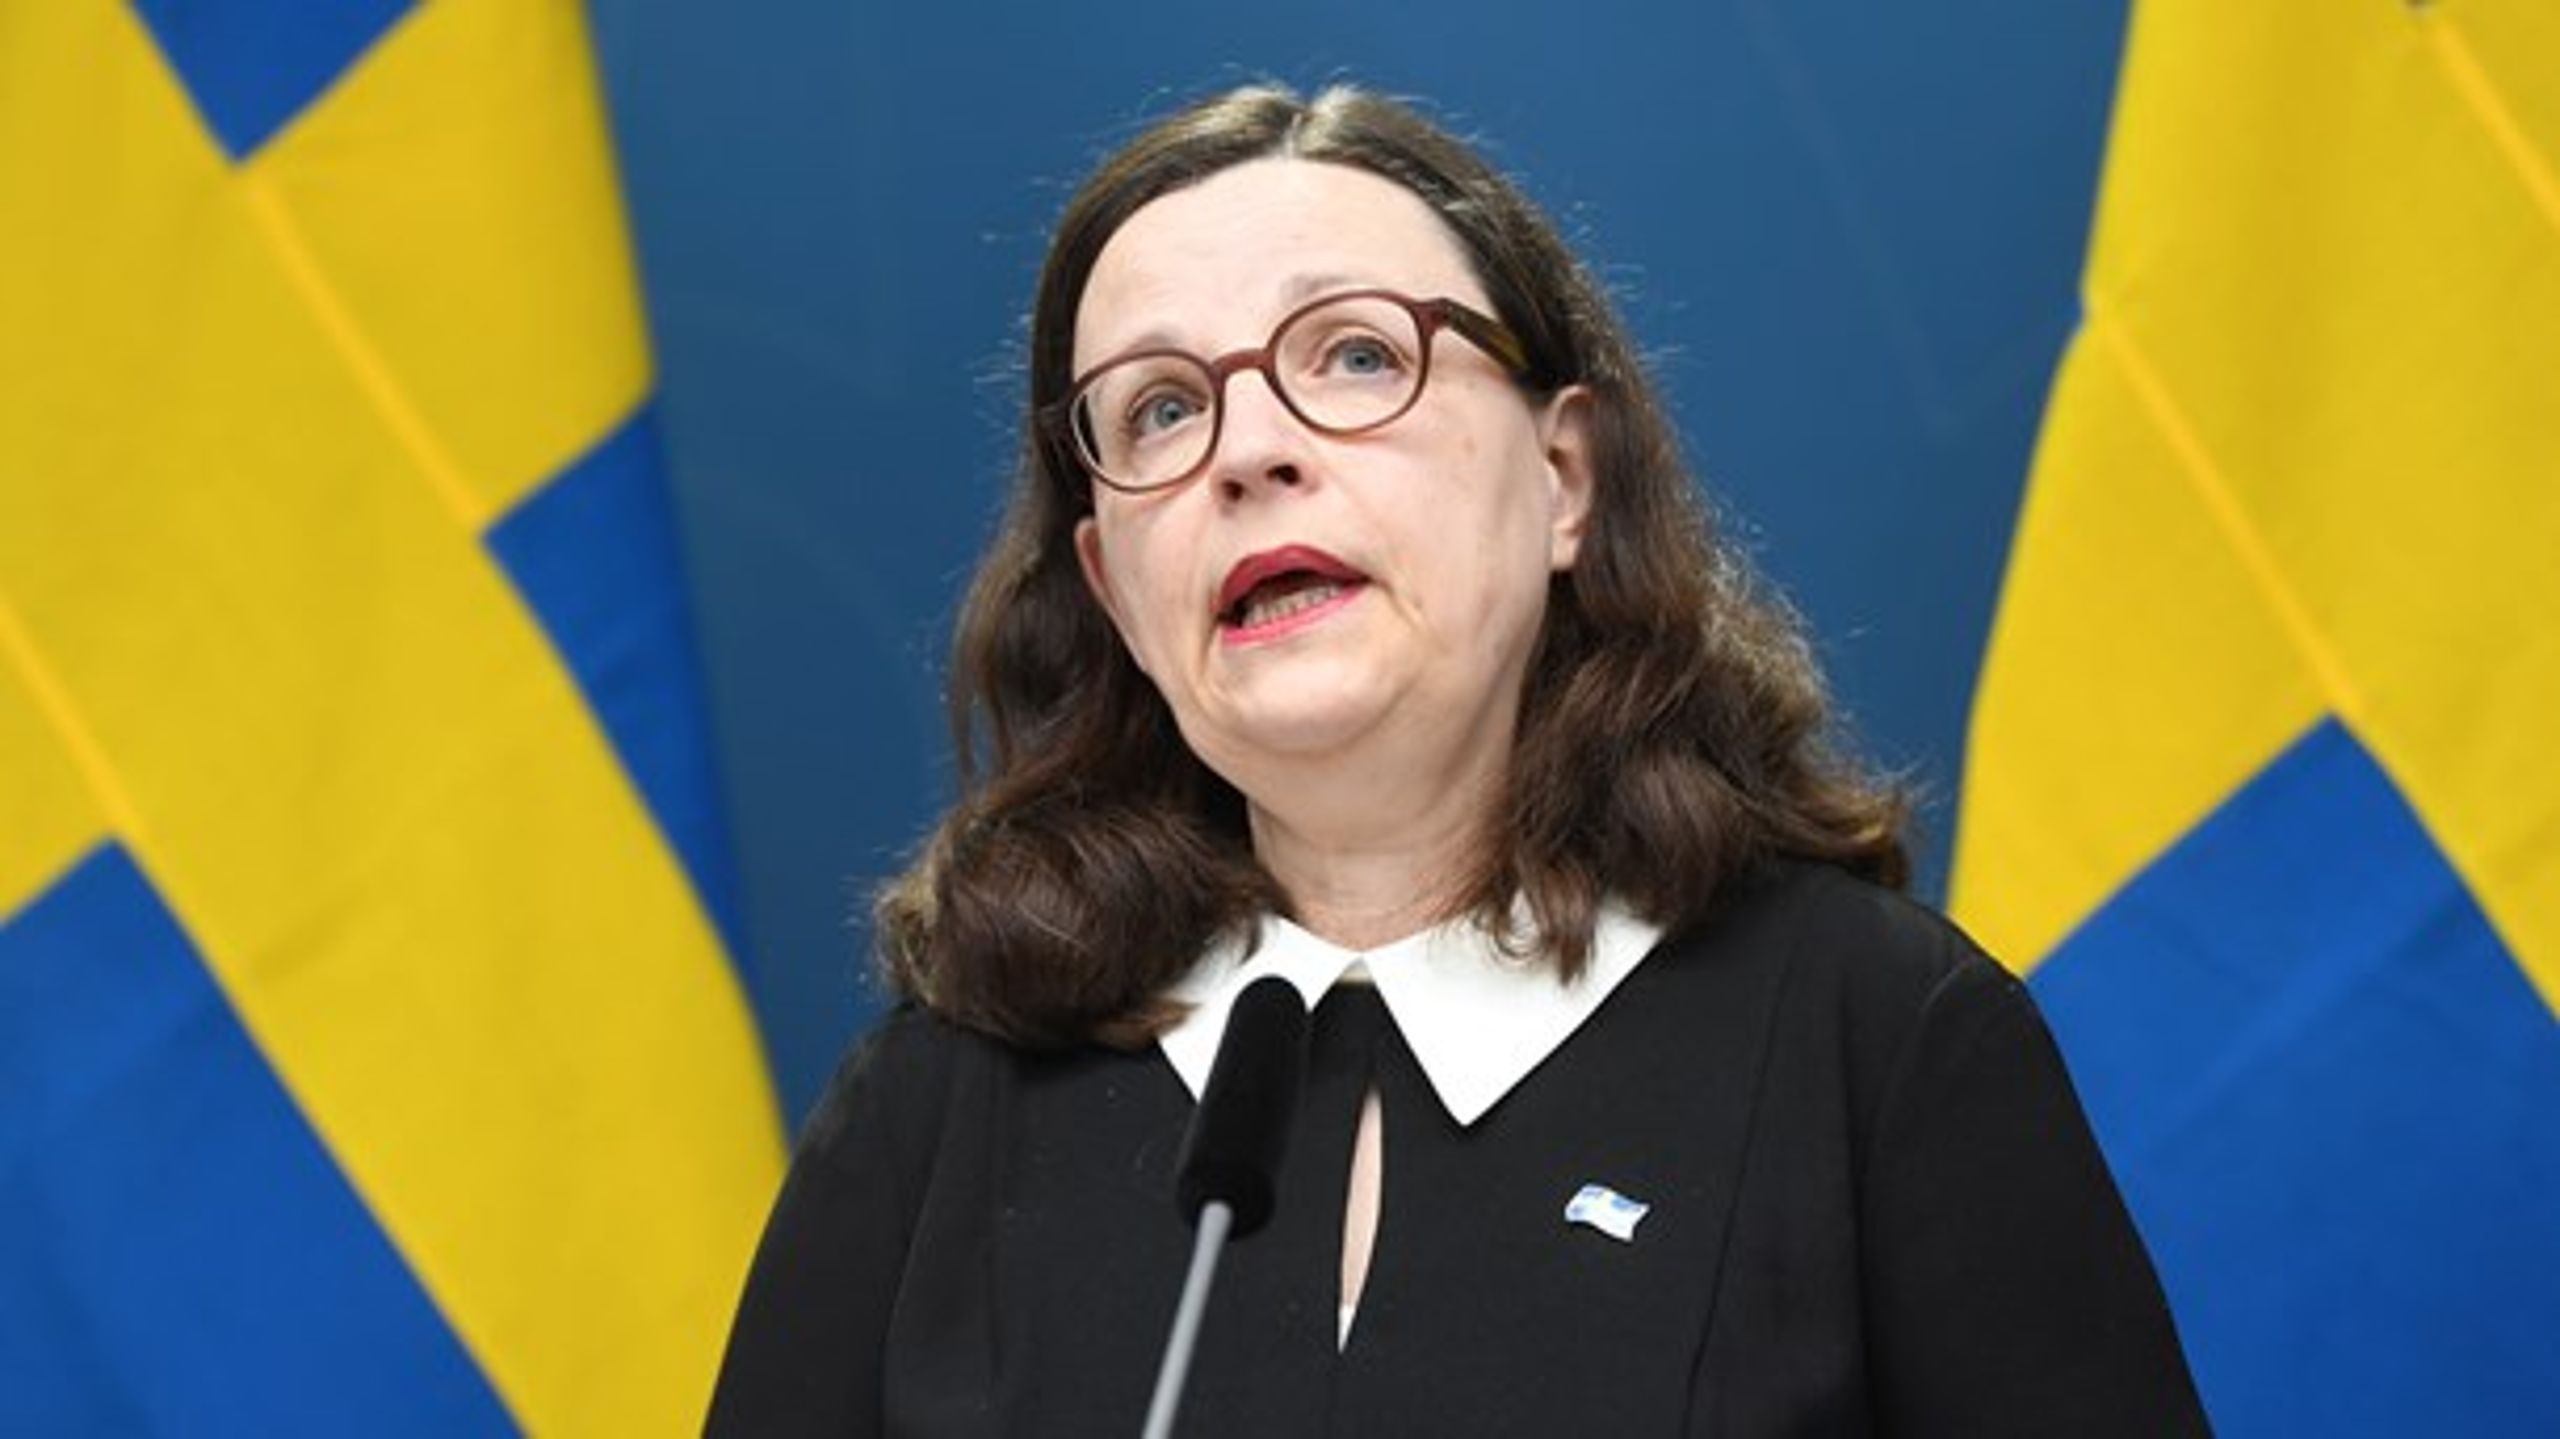 Sveriges undervisningsminister, Anna Ekström (S), forklarede fredag, hvorfor regeringen holder landets skoler åbne.